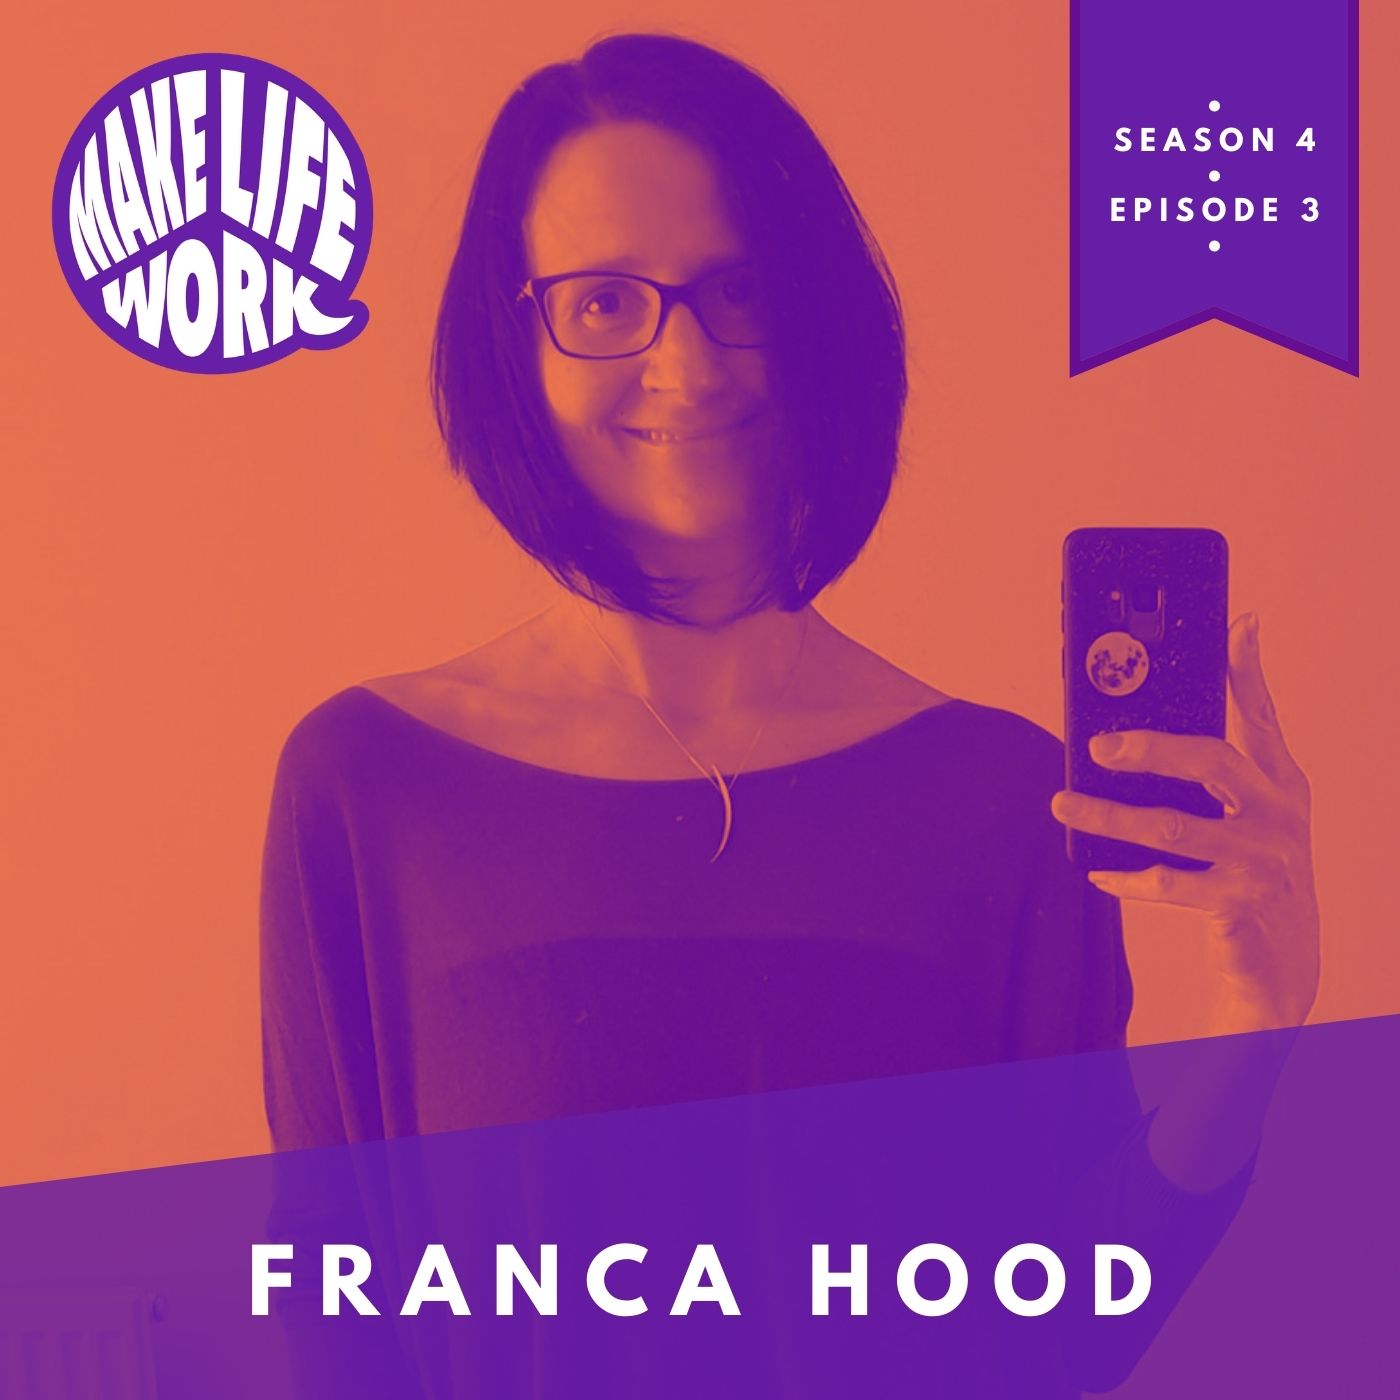 Make Life Work with Franca Hood